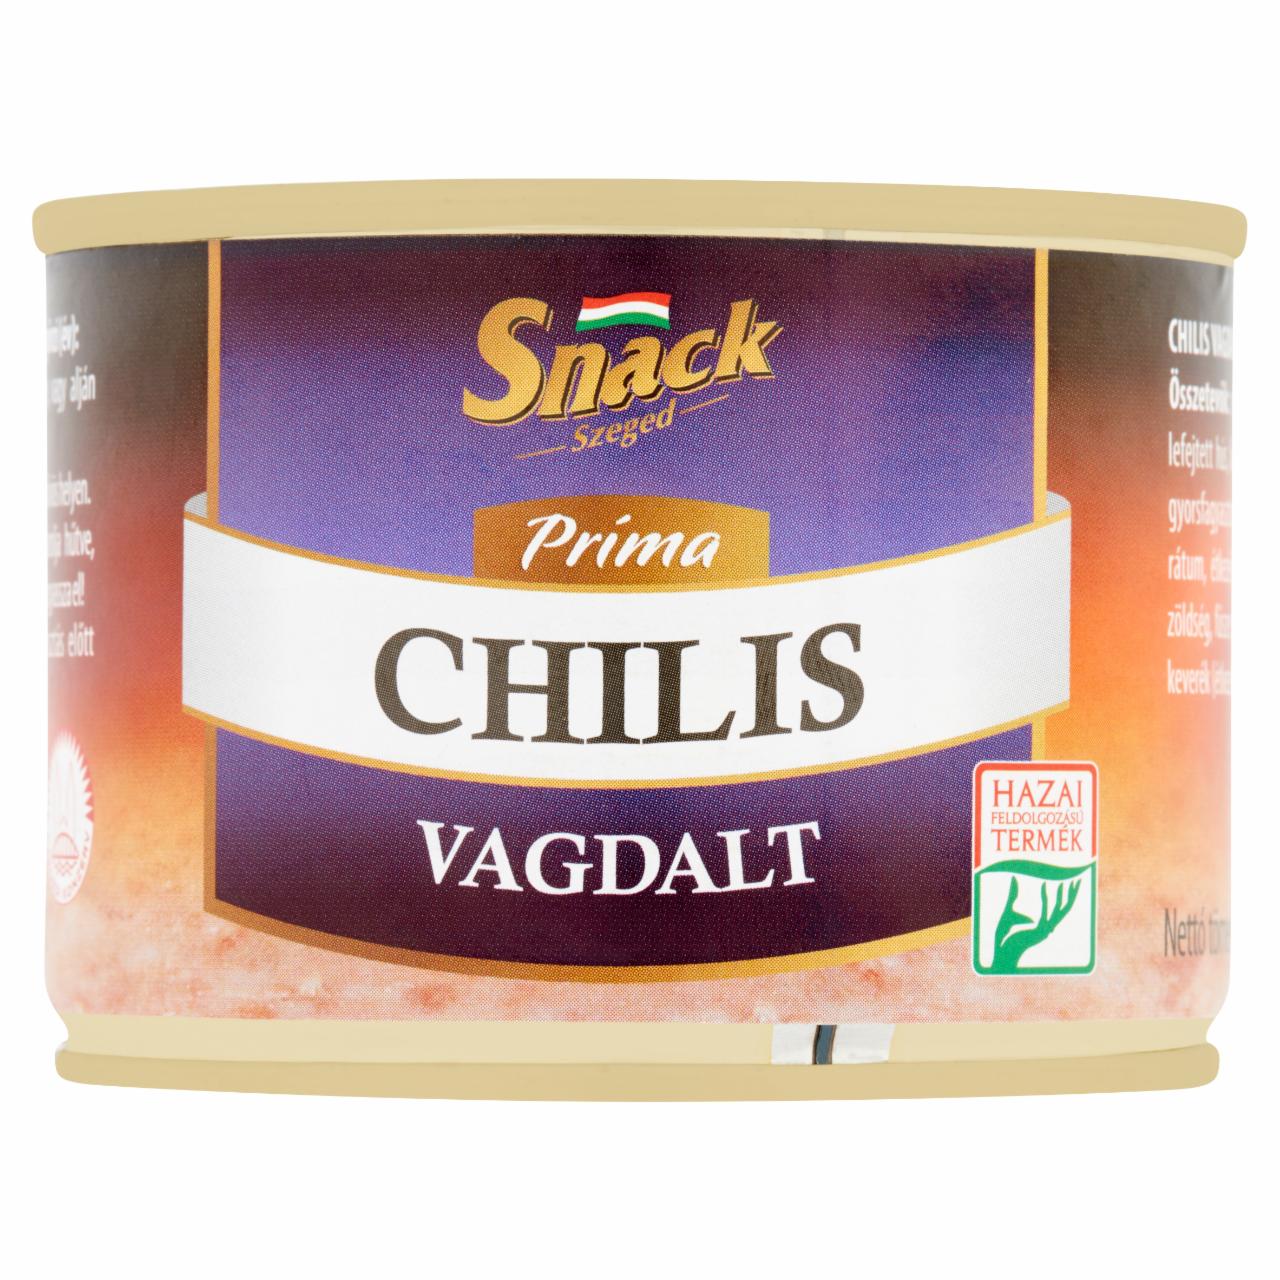 Képek - Snack Szeged Príma chilis vagdalt 190 g